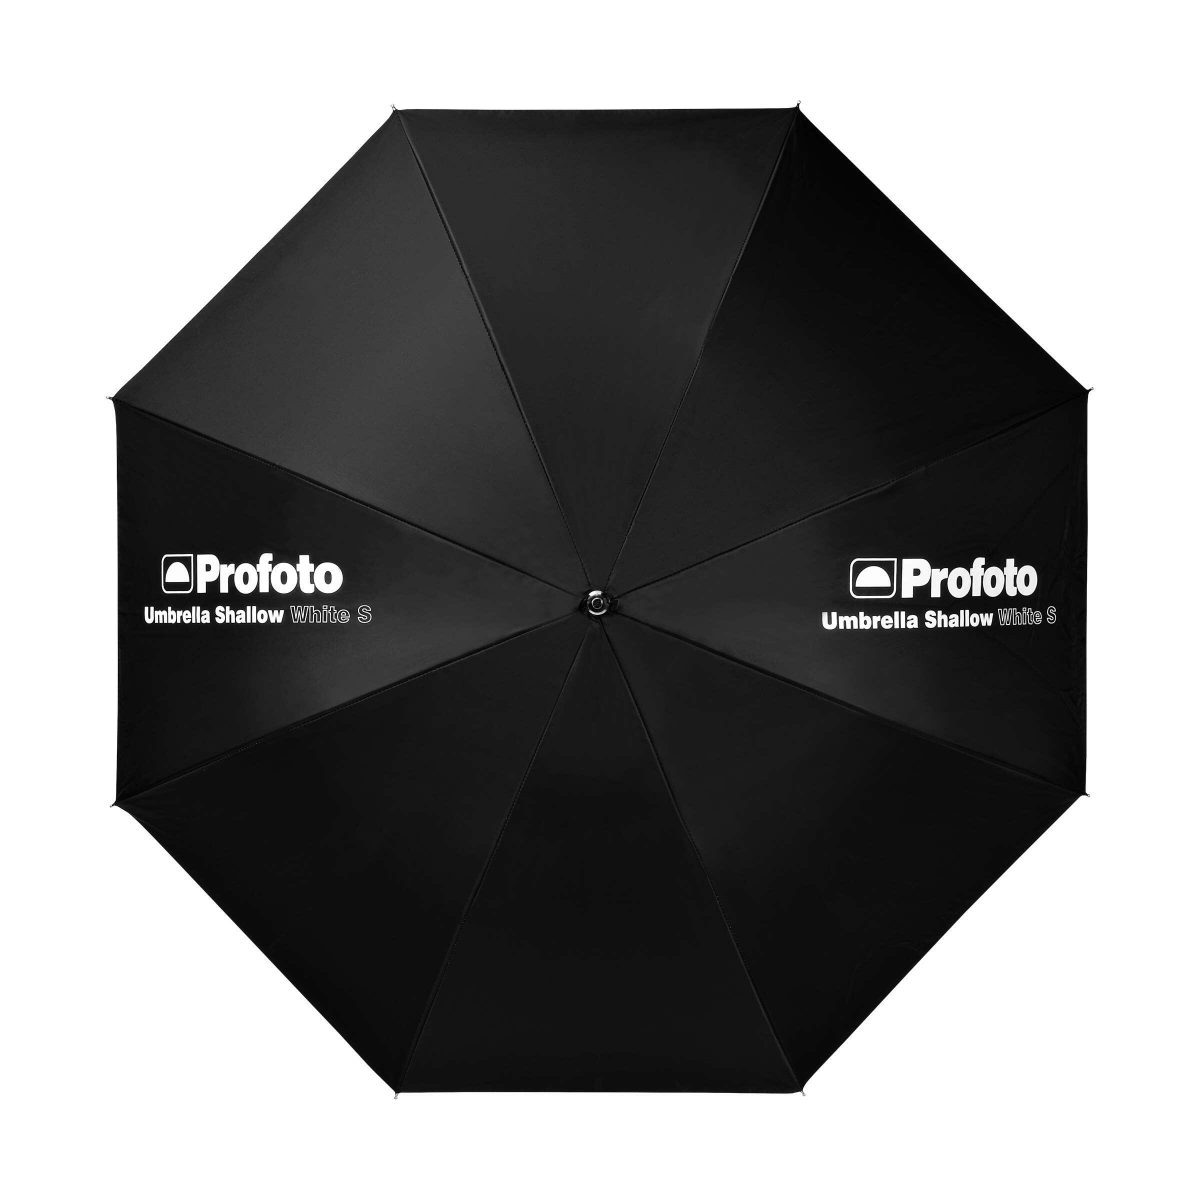 profoto_umbrella_shallow_white_s_04